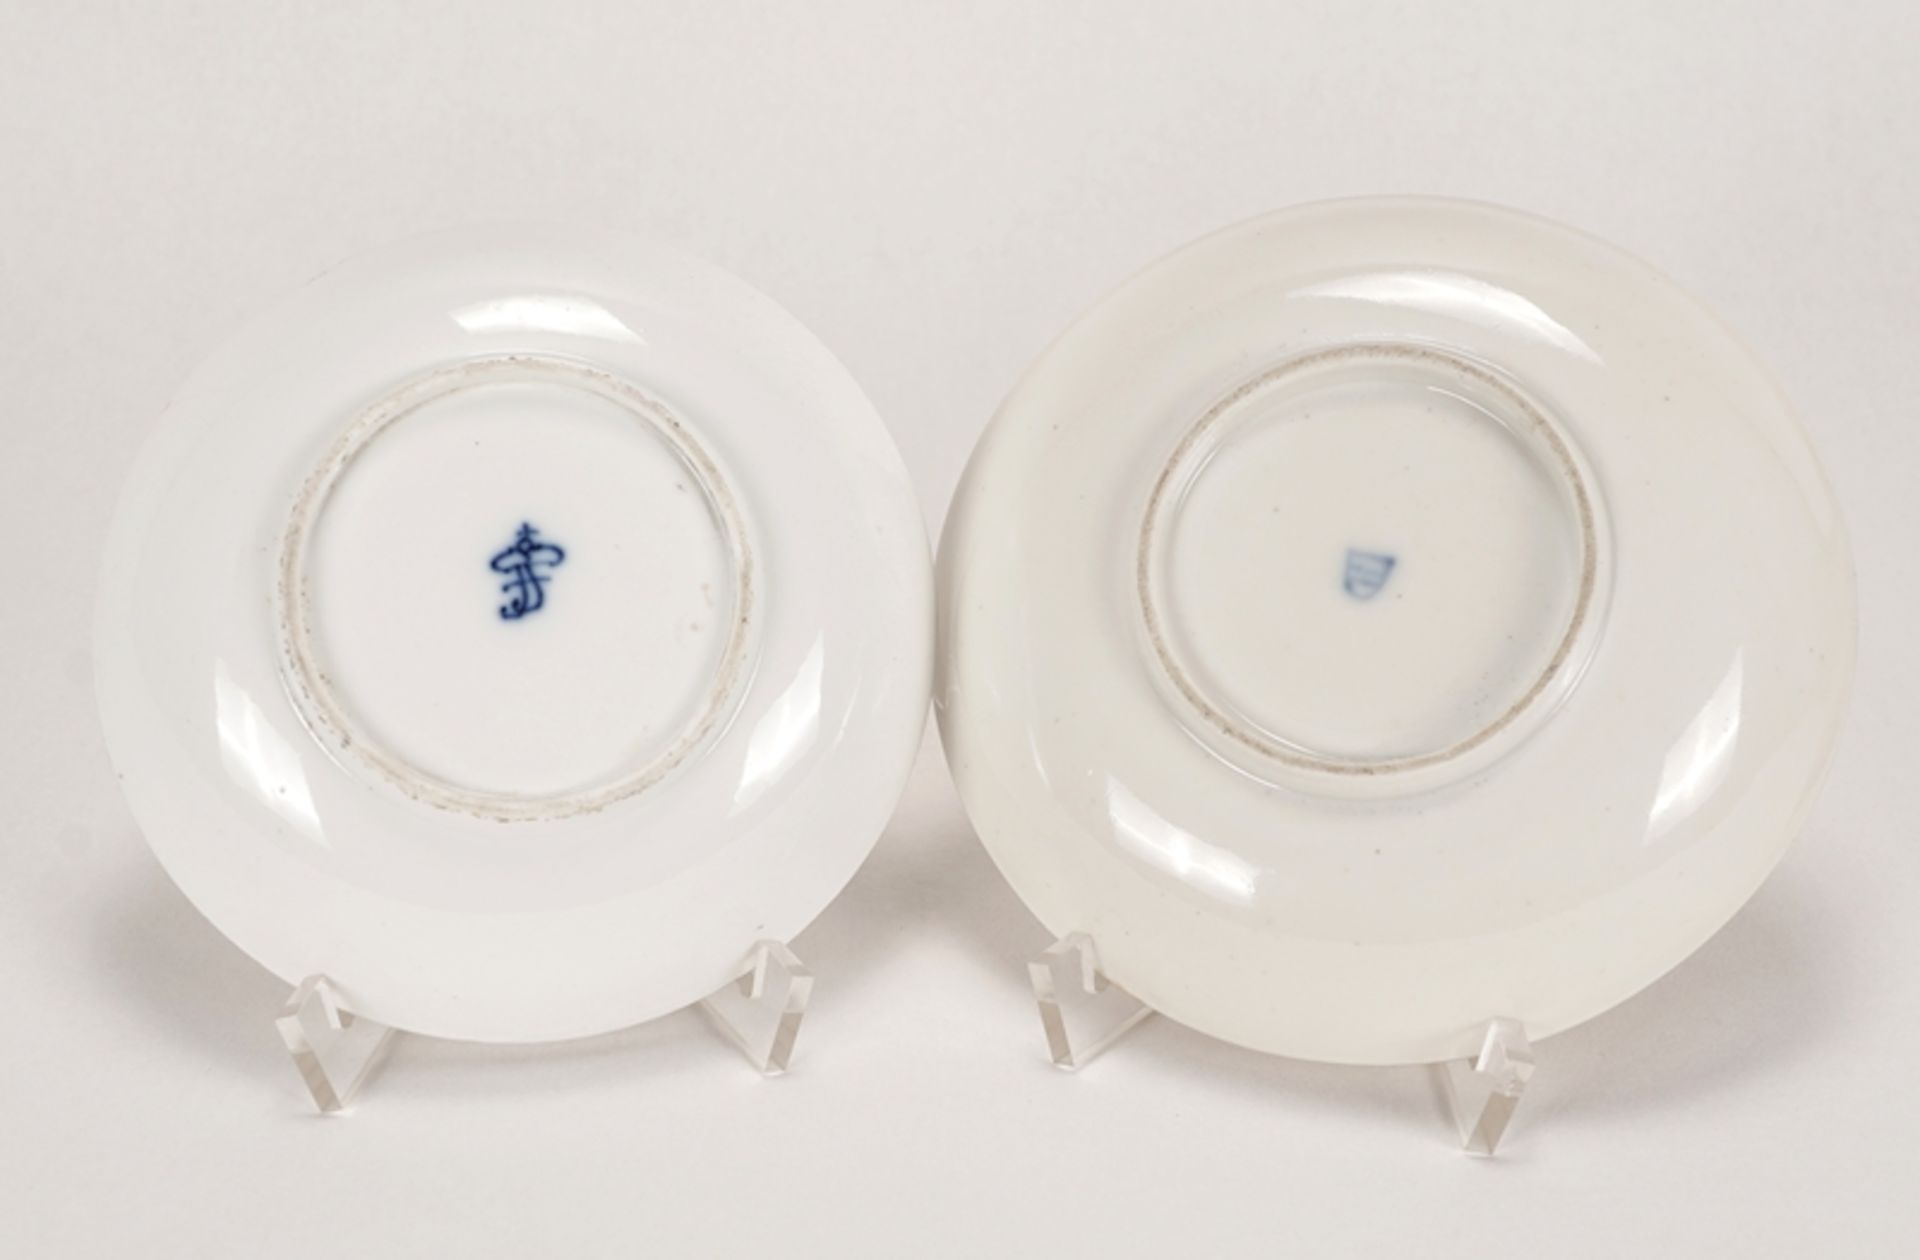 Zwei kleine Zierteller | Two small decorative plates - Image 5 of 5